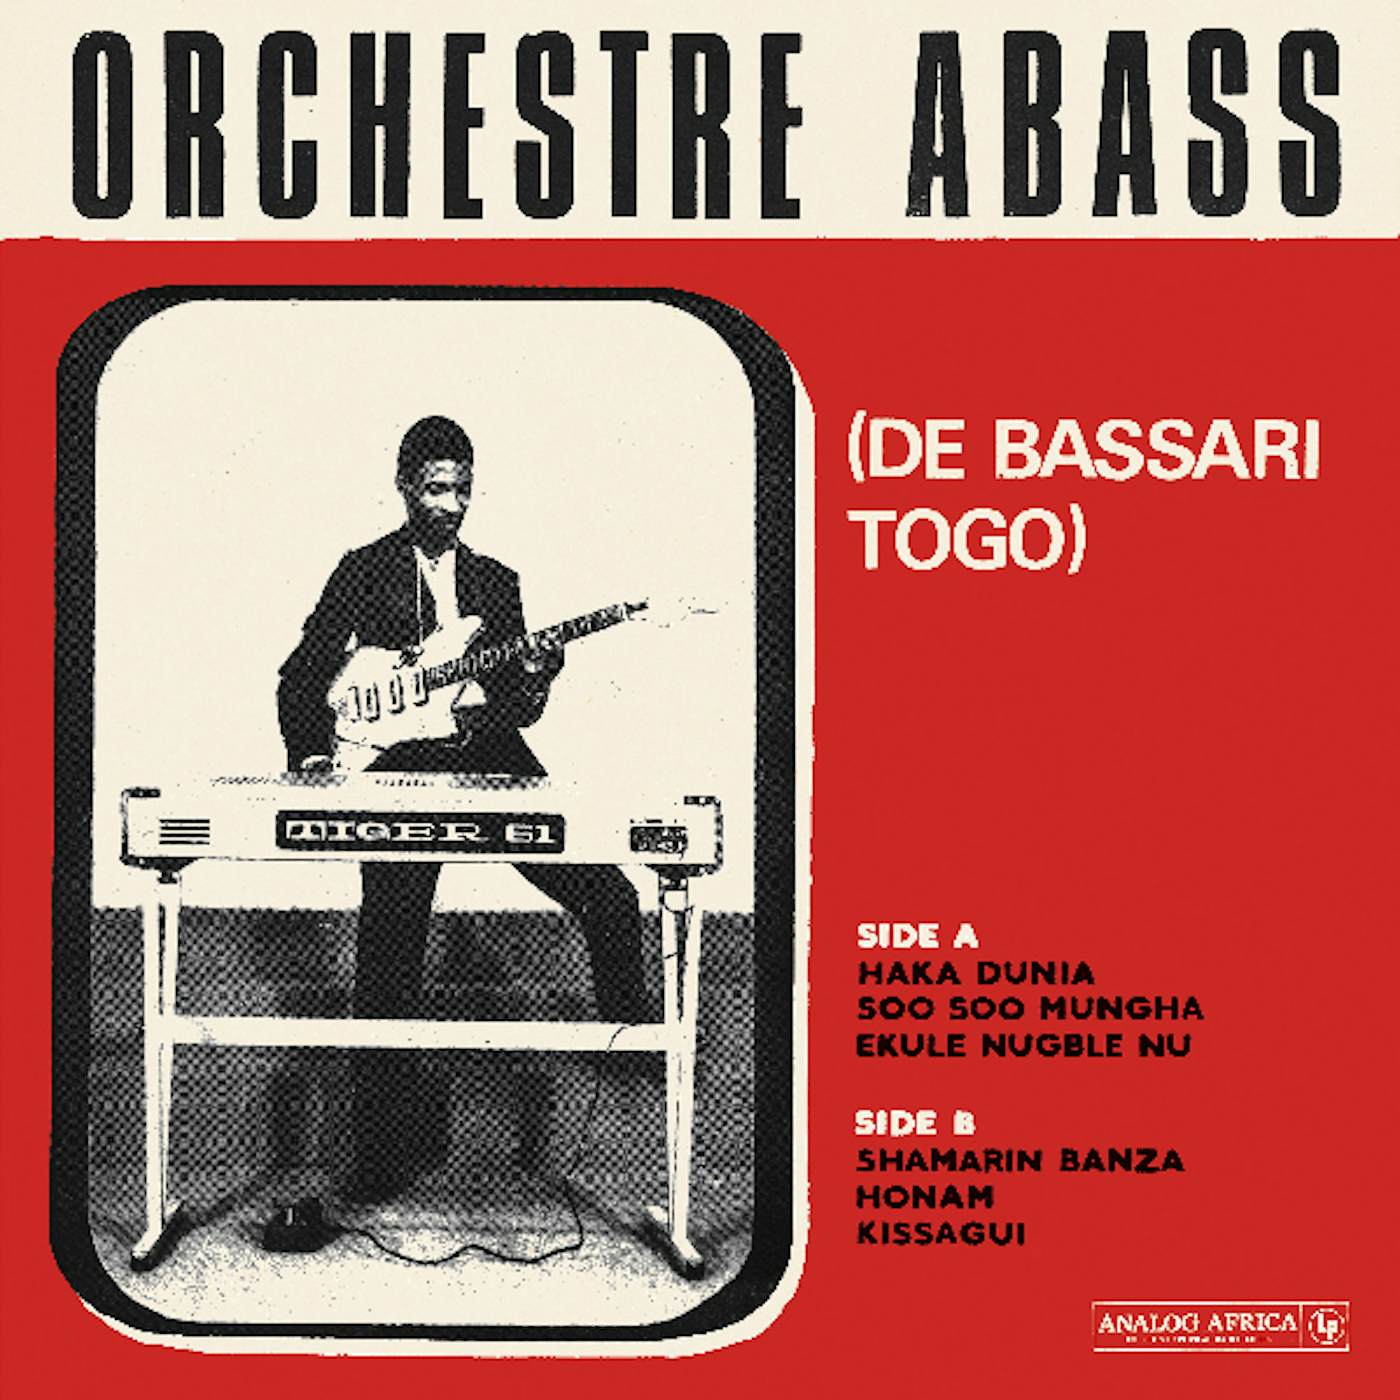 ORCHESTRE ABASS (DE BASSARI TOGO) Vinyl Record